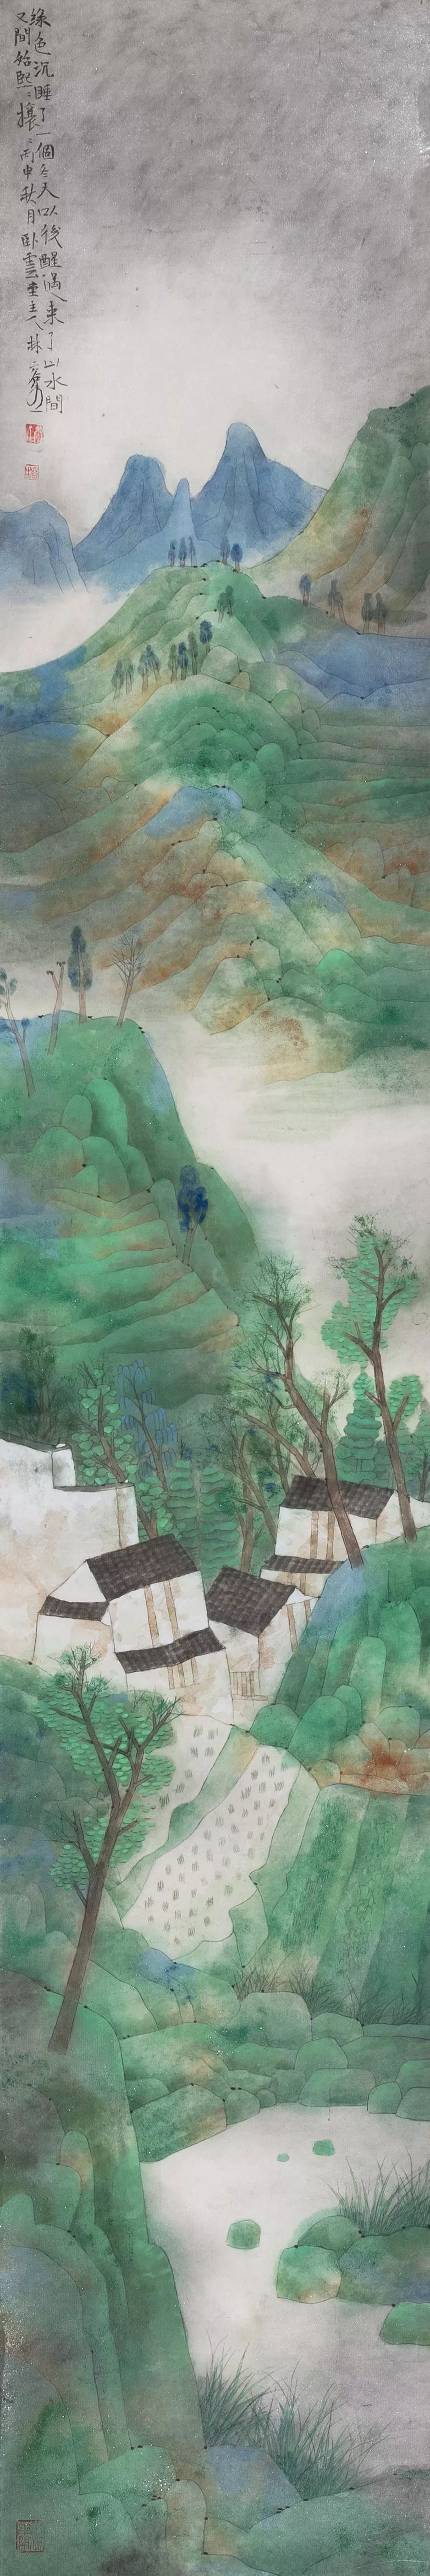 丹青语境上海大学上海美术学院及中国国家画院青绿重彩山水画部分作品